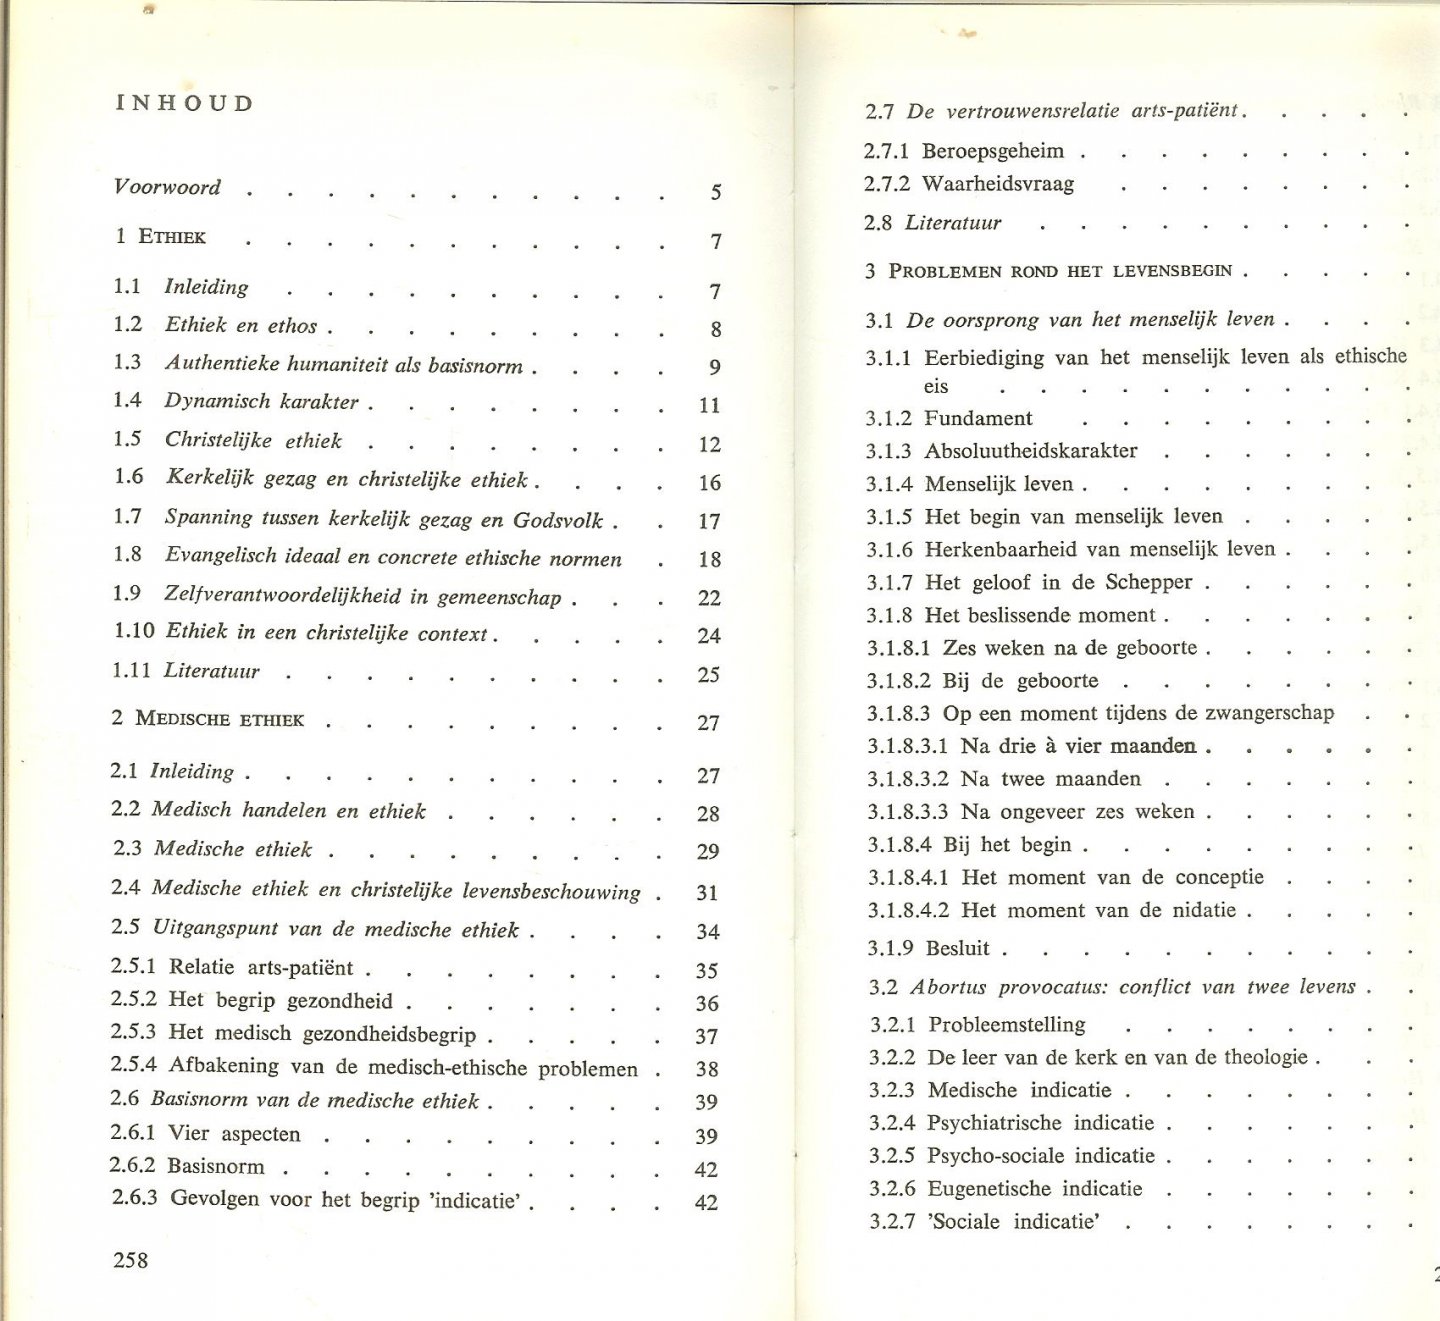 Sporken Paul  Typografische verzorging van Fons  van der Linden gvn - Voorlopige Diagnose  Inleiding tot een medische ethiek